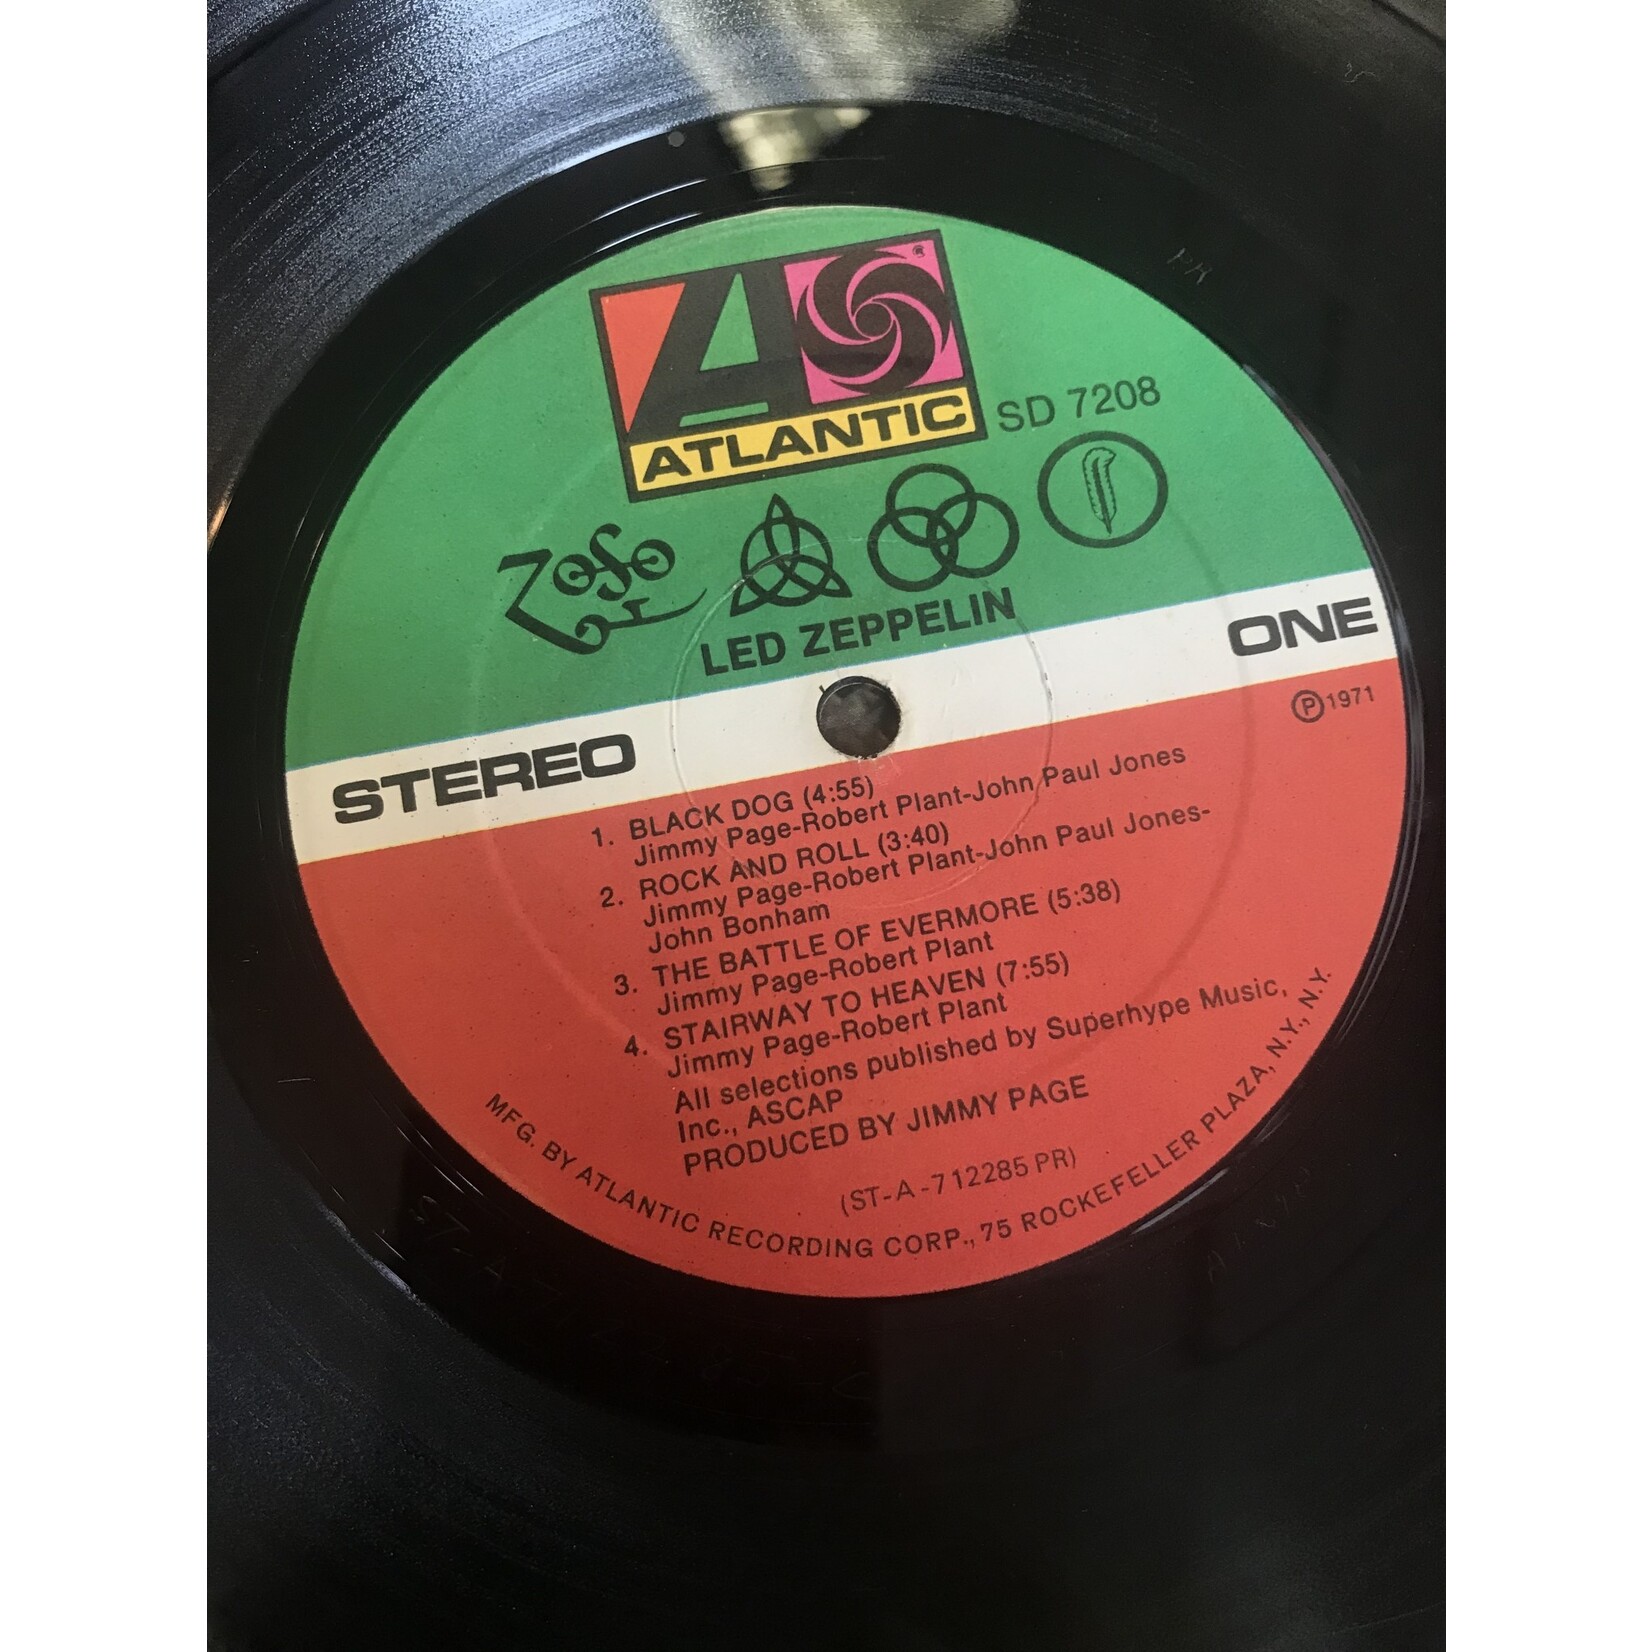 Led Zeppelin - Led Zeppelin IV - SD 7208 - Vinyl LP (USED - Presswell Press)